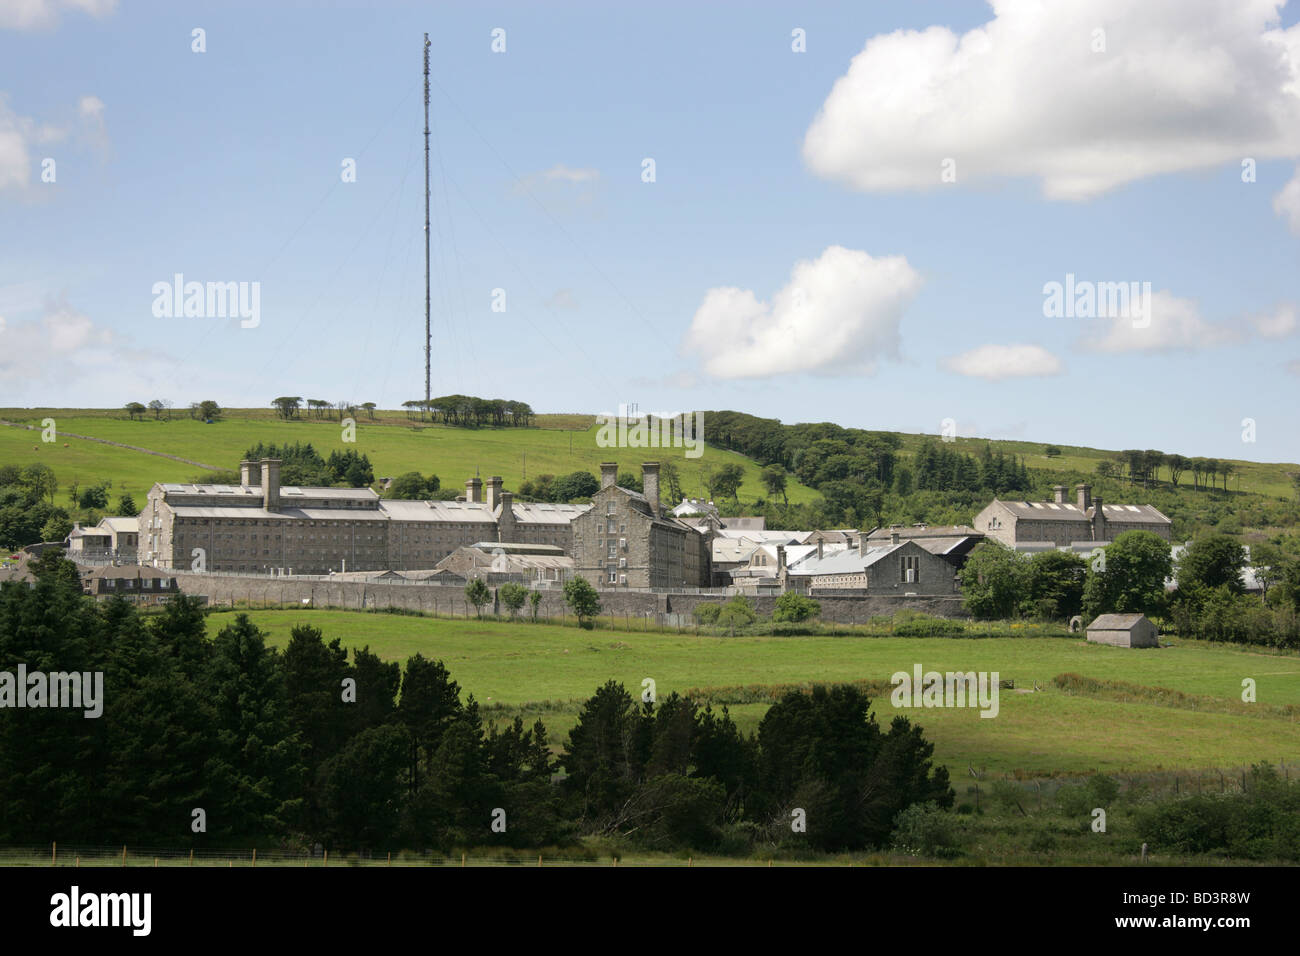 Dorf von Princetown, England. Fernsicht auf der Ostfassade und Wände des frühen 19. Jahrhunderts HM Gefängnis Dartmoor. Stockfoto